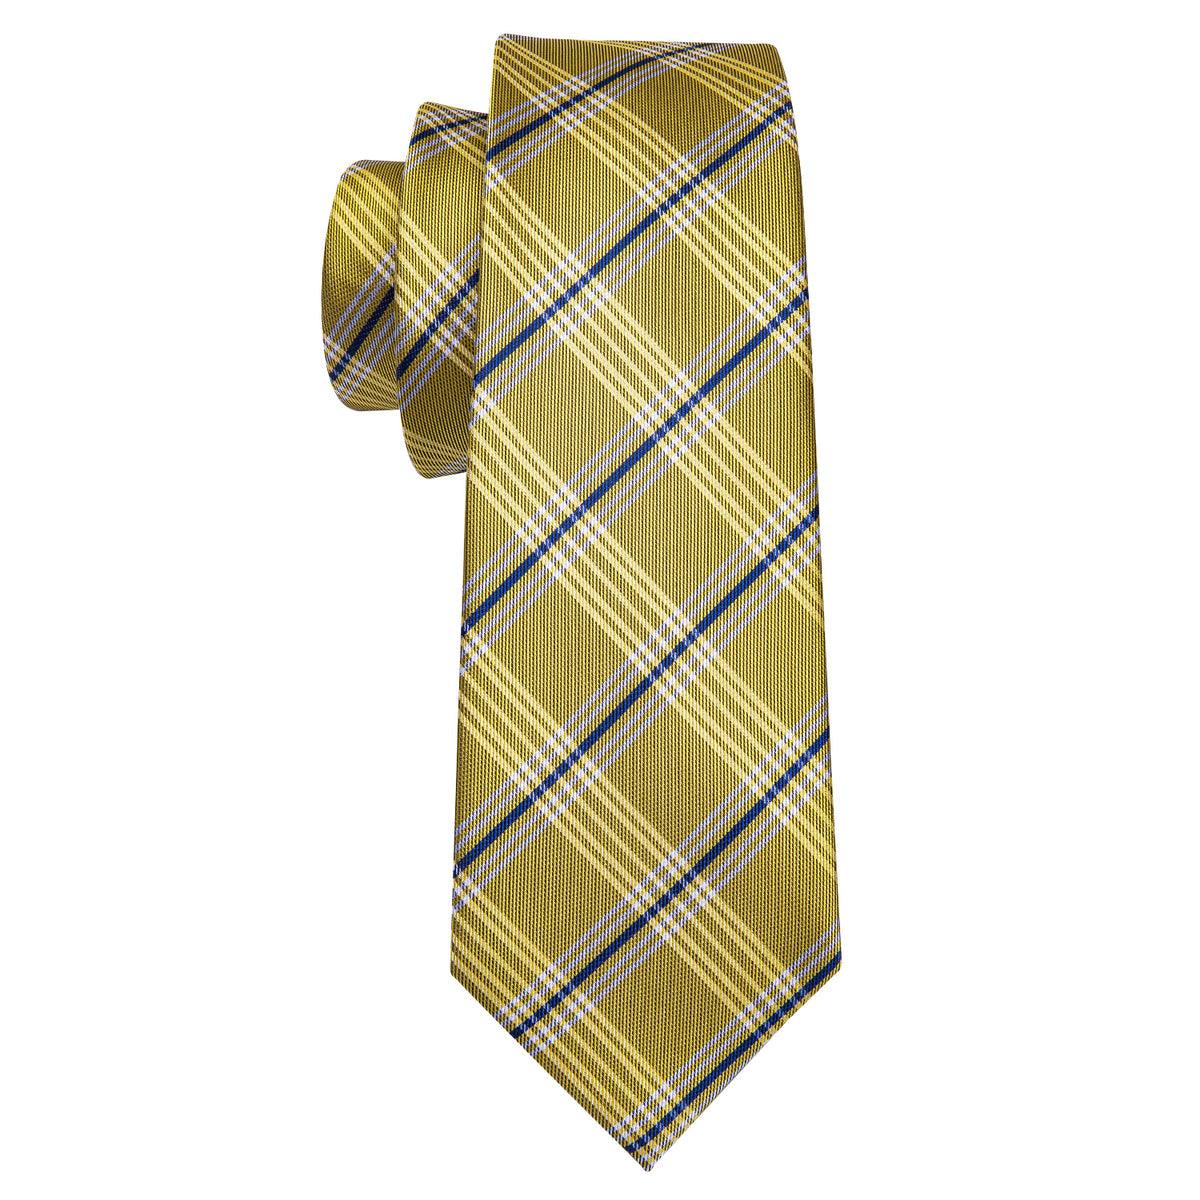 Yellow Black striped Silk Tie Pocket Square Cufflink Set - STYLETIE